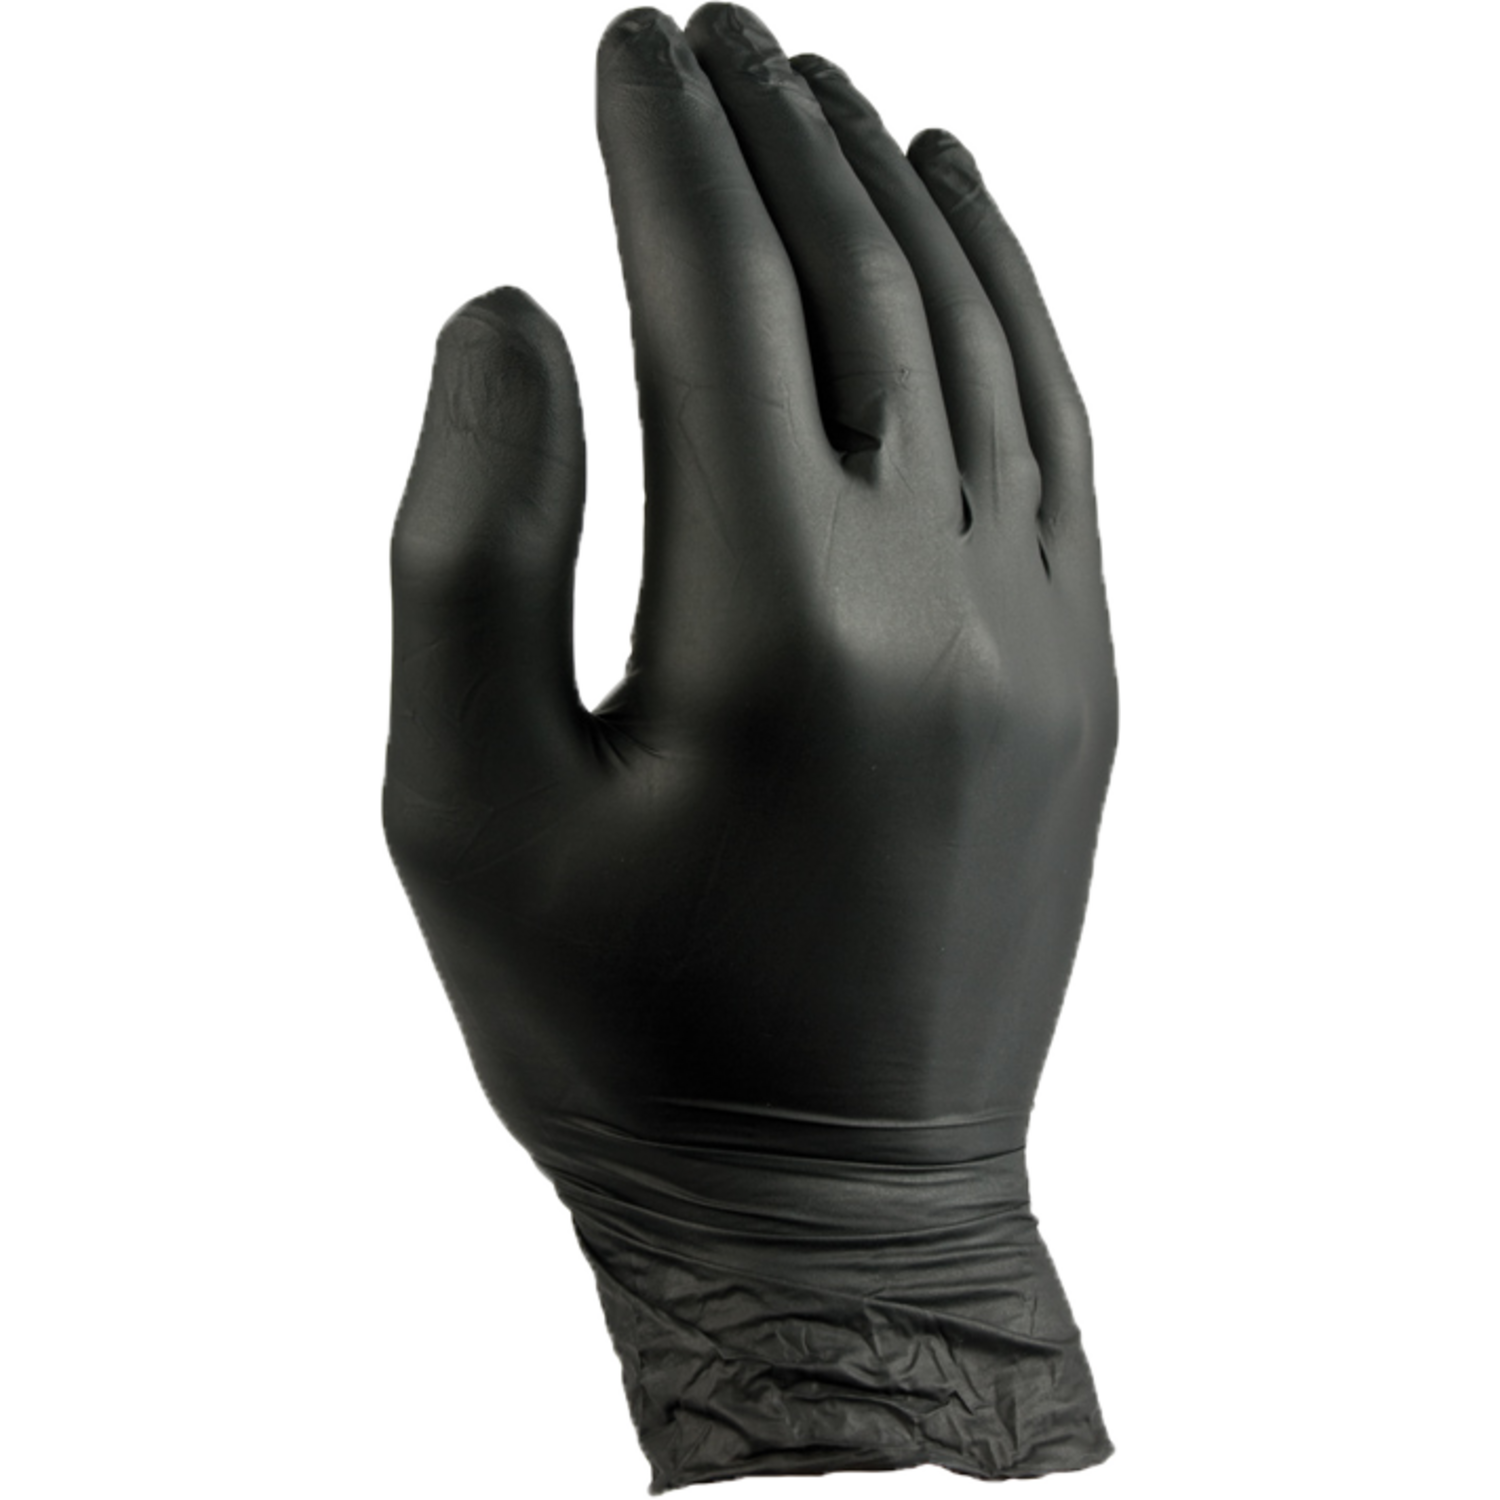 ComFort Handschoen, Nitril, ongepoederd, zwart 1